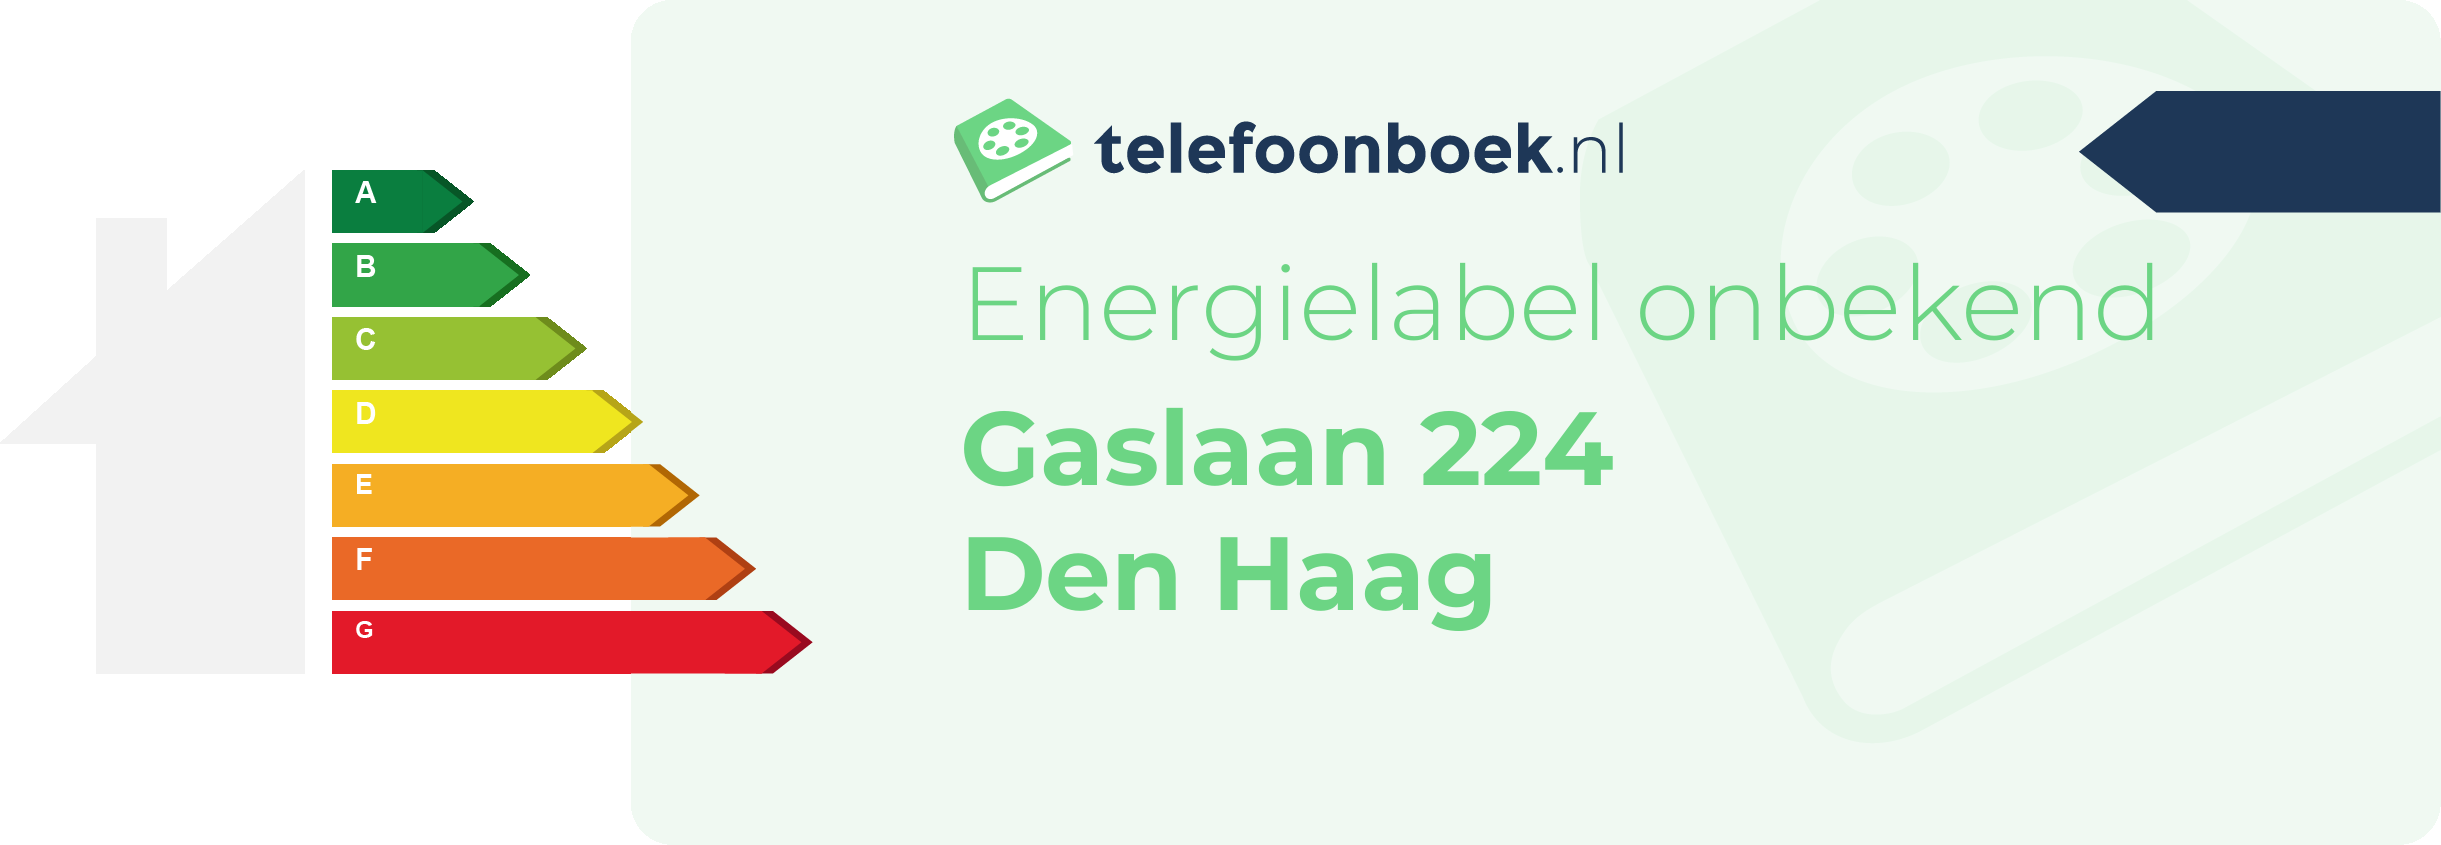 Energielabel Gaslaan 224 Den Haag